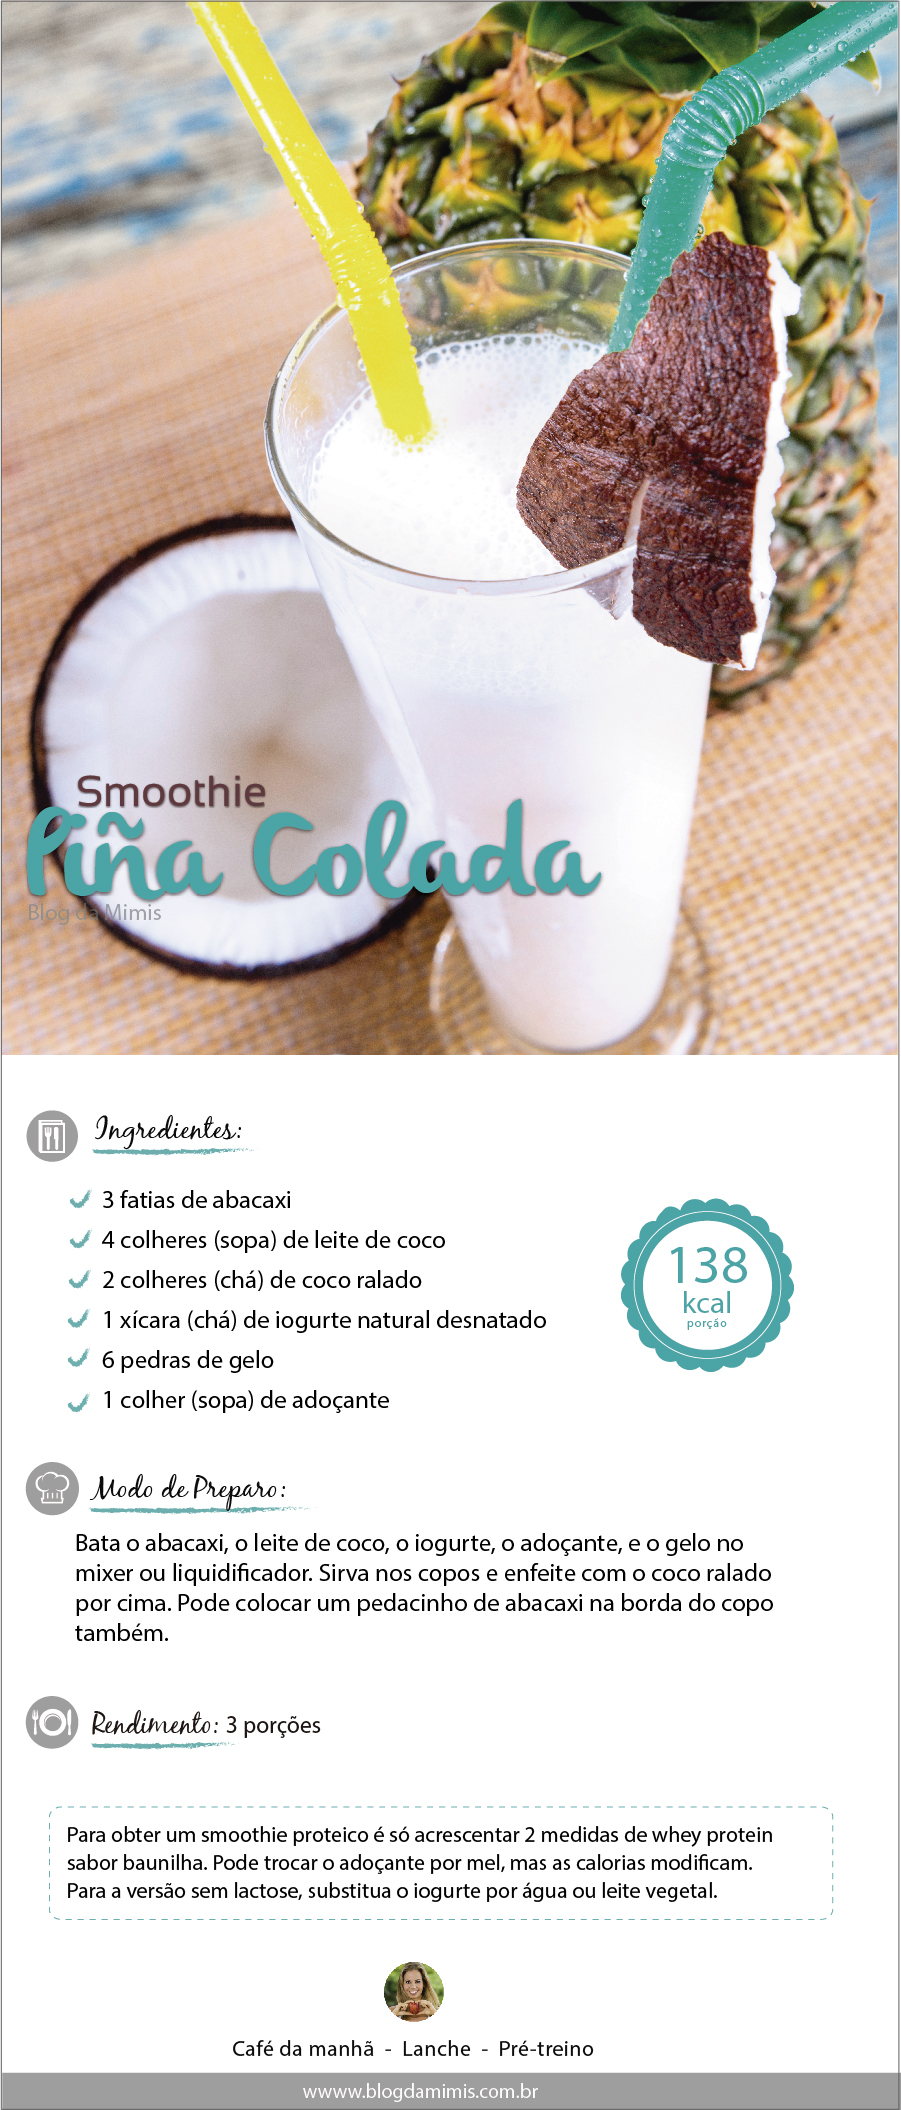 smoothie-pina-colada-blog-da-mimis-michelle-franzoni-01